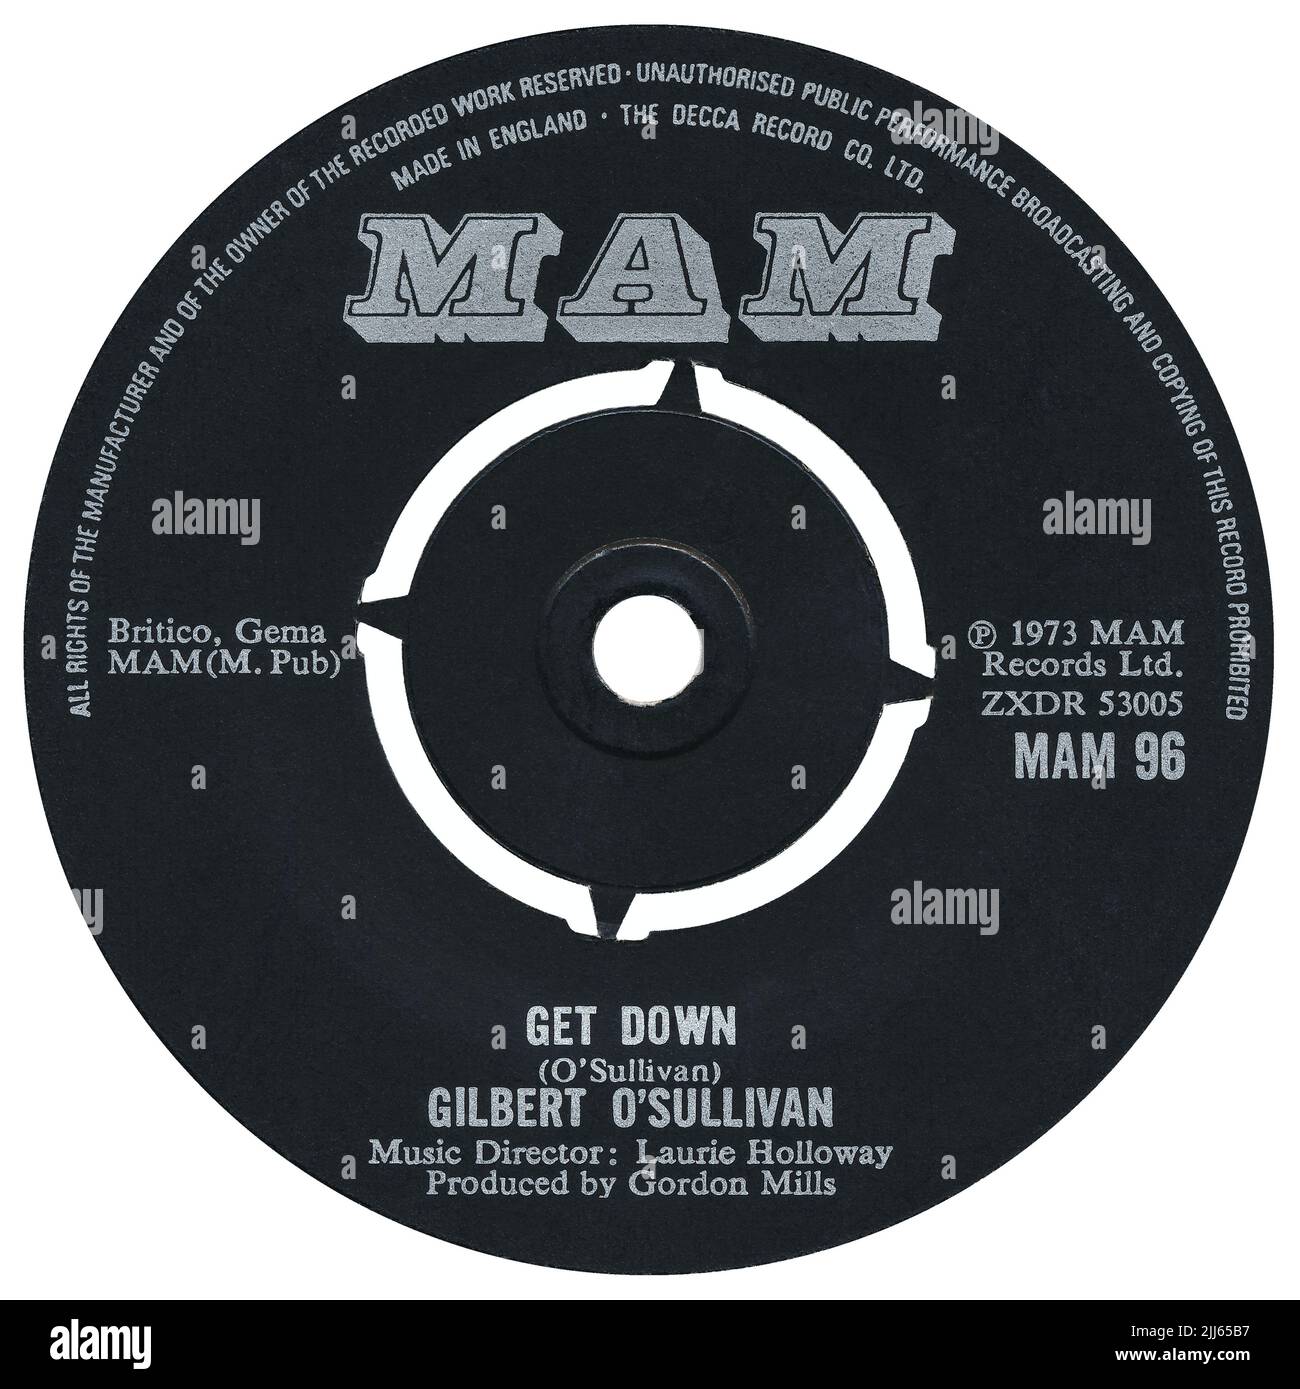 45 RPM 7' etichetta pop record UK di Get Down di Gilbert o'Sullivan. Scritto da Gilbert o'Sullivan, arrangiato da Laurie Holloway e prodotto da Gordon Mills. Rilasciato nel marzo 1973 sull'etichetta MAM. Foto Stock